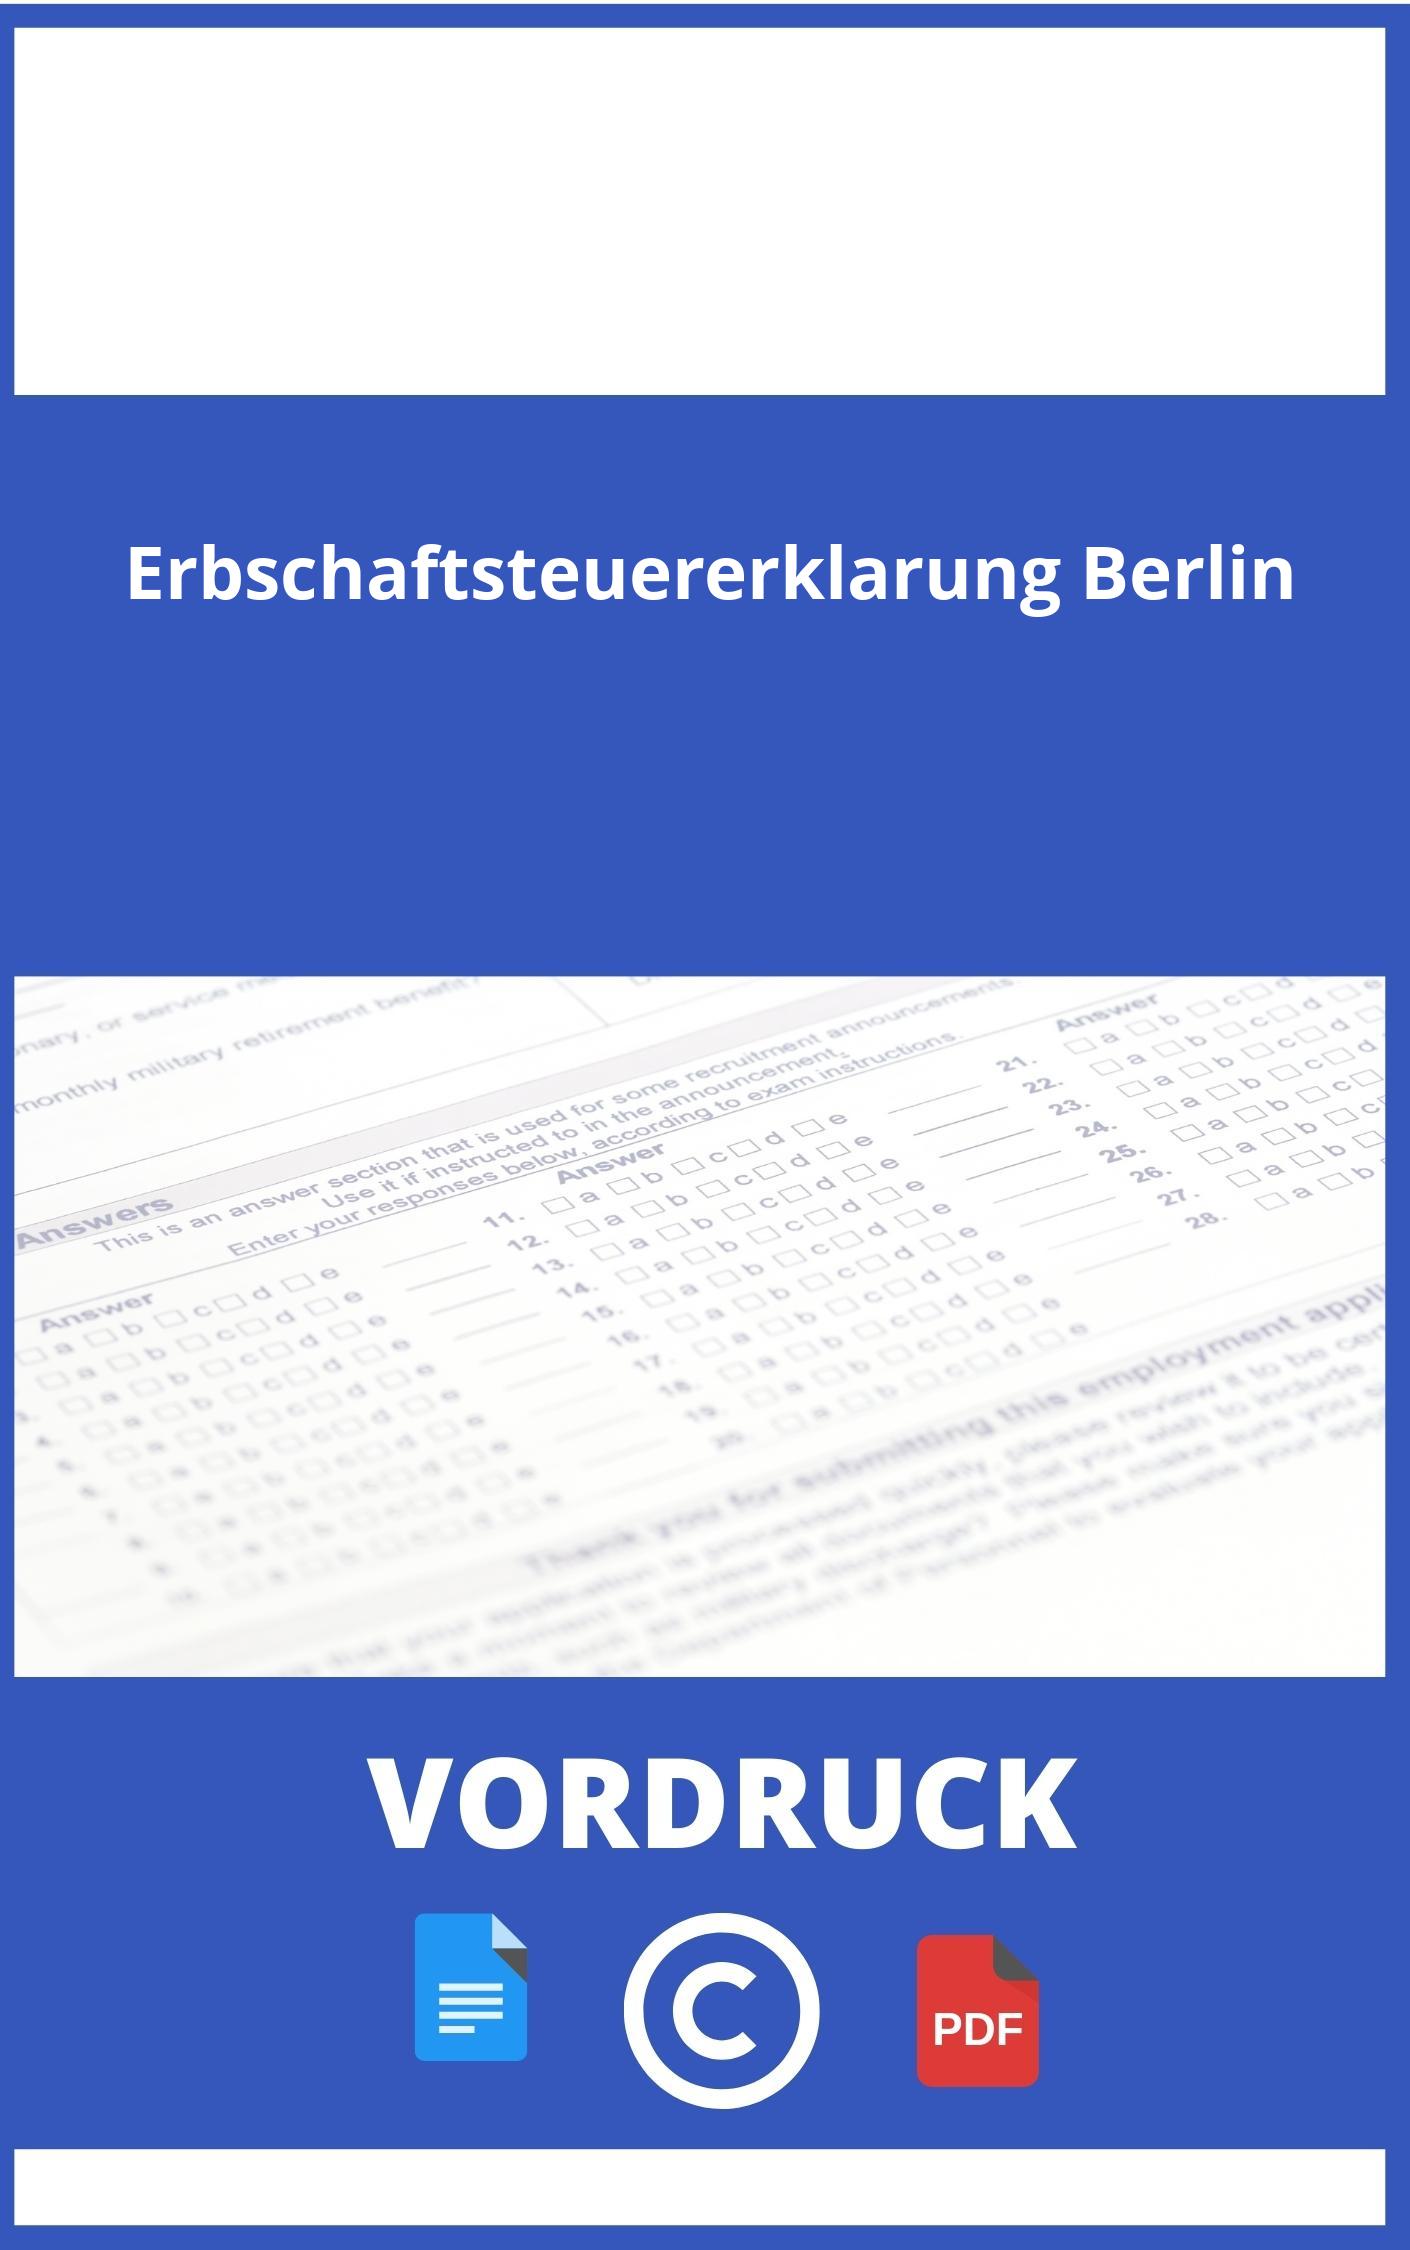 Erbschaftsteuererklärung Vordruck Berlin